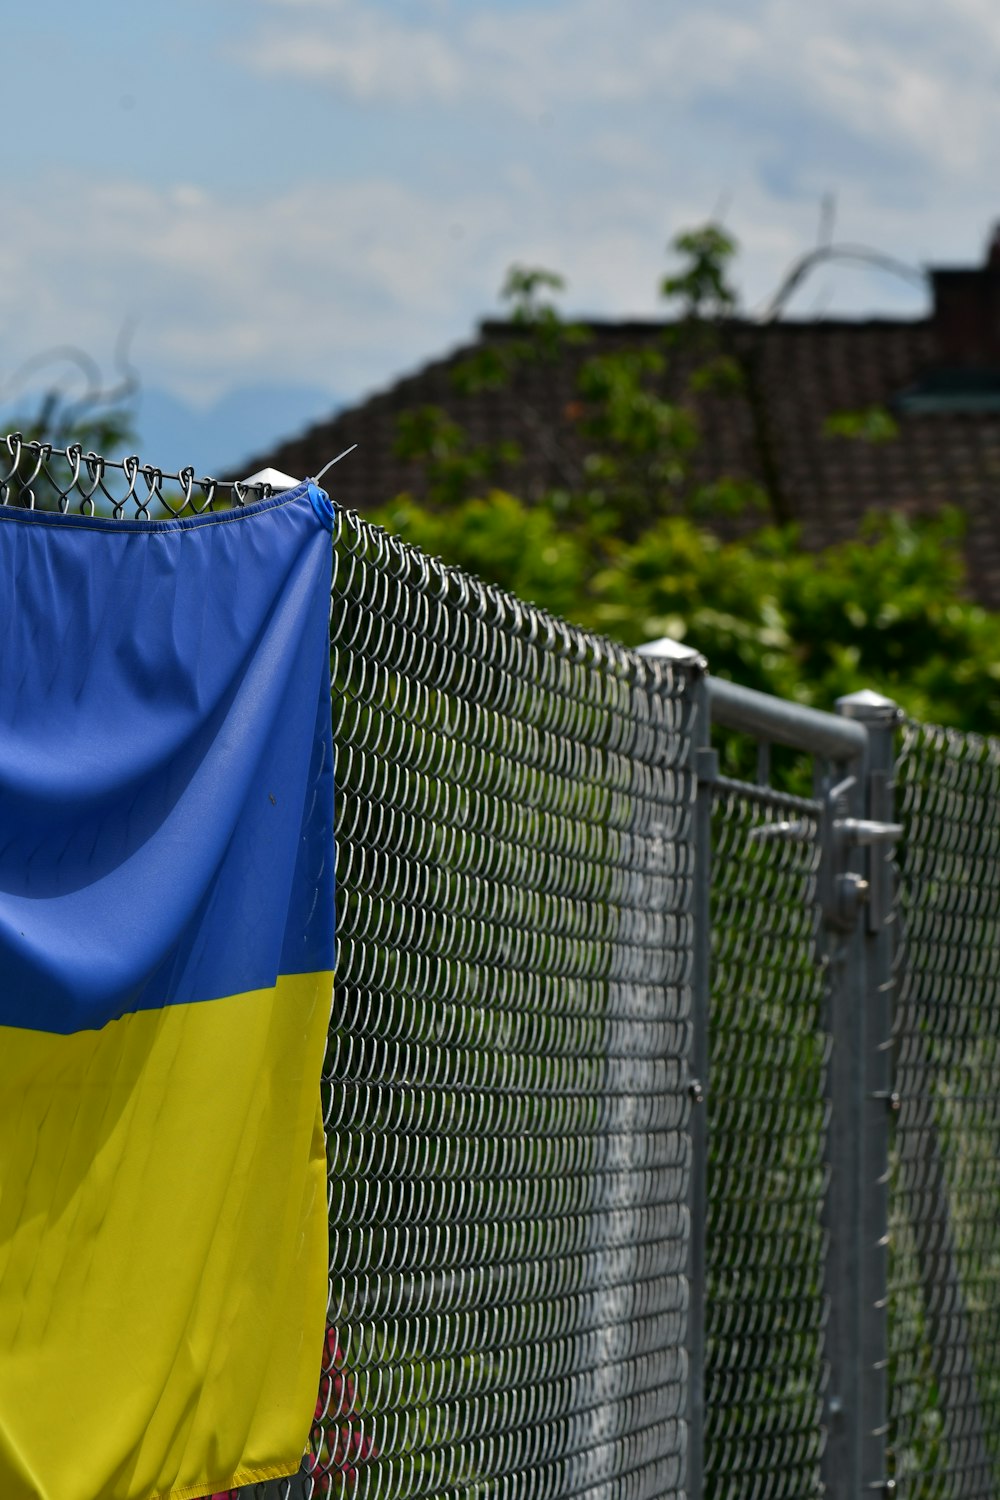 un drapeau bleu et jaune accroché à une clôture à mailles de chaîne